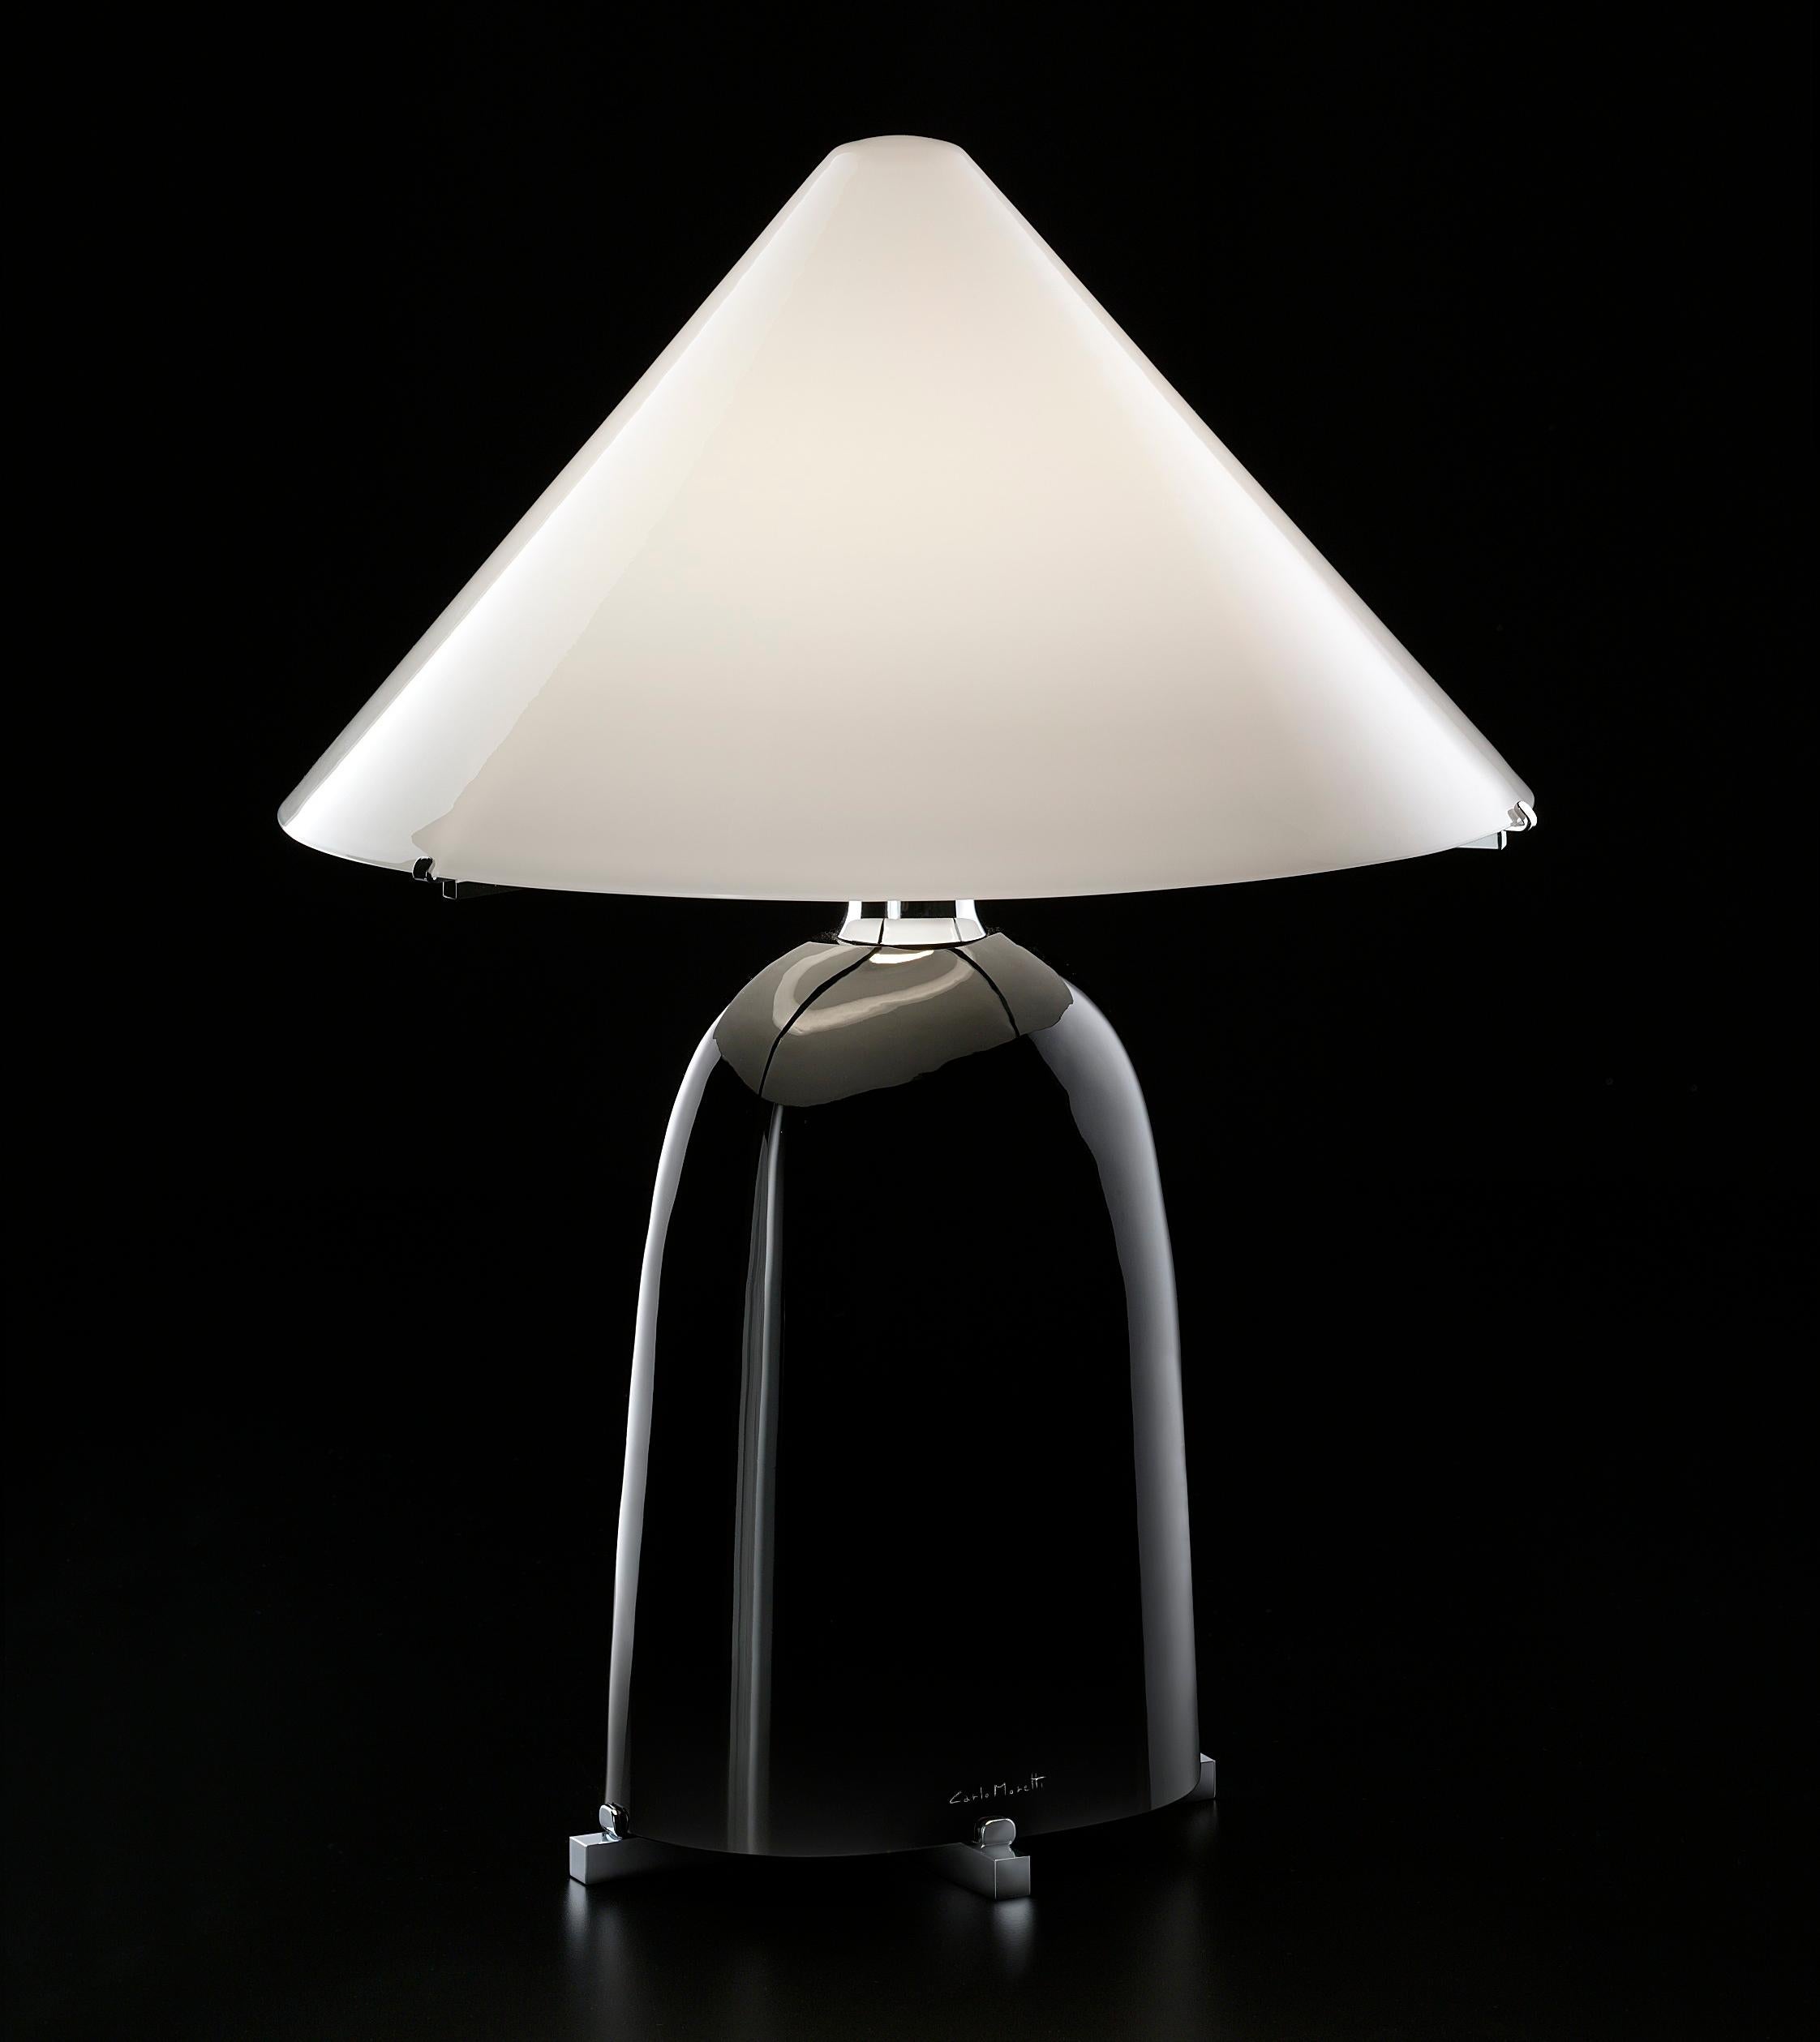 Carlo Moretti a créé la lampe Ovale dans les années 1980.
L'abat-jour est également en verre, ce qui confère à cette lampe une beauté unique. 